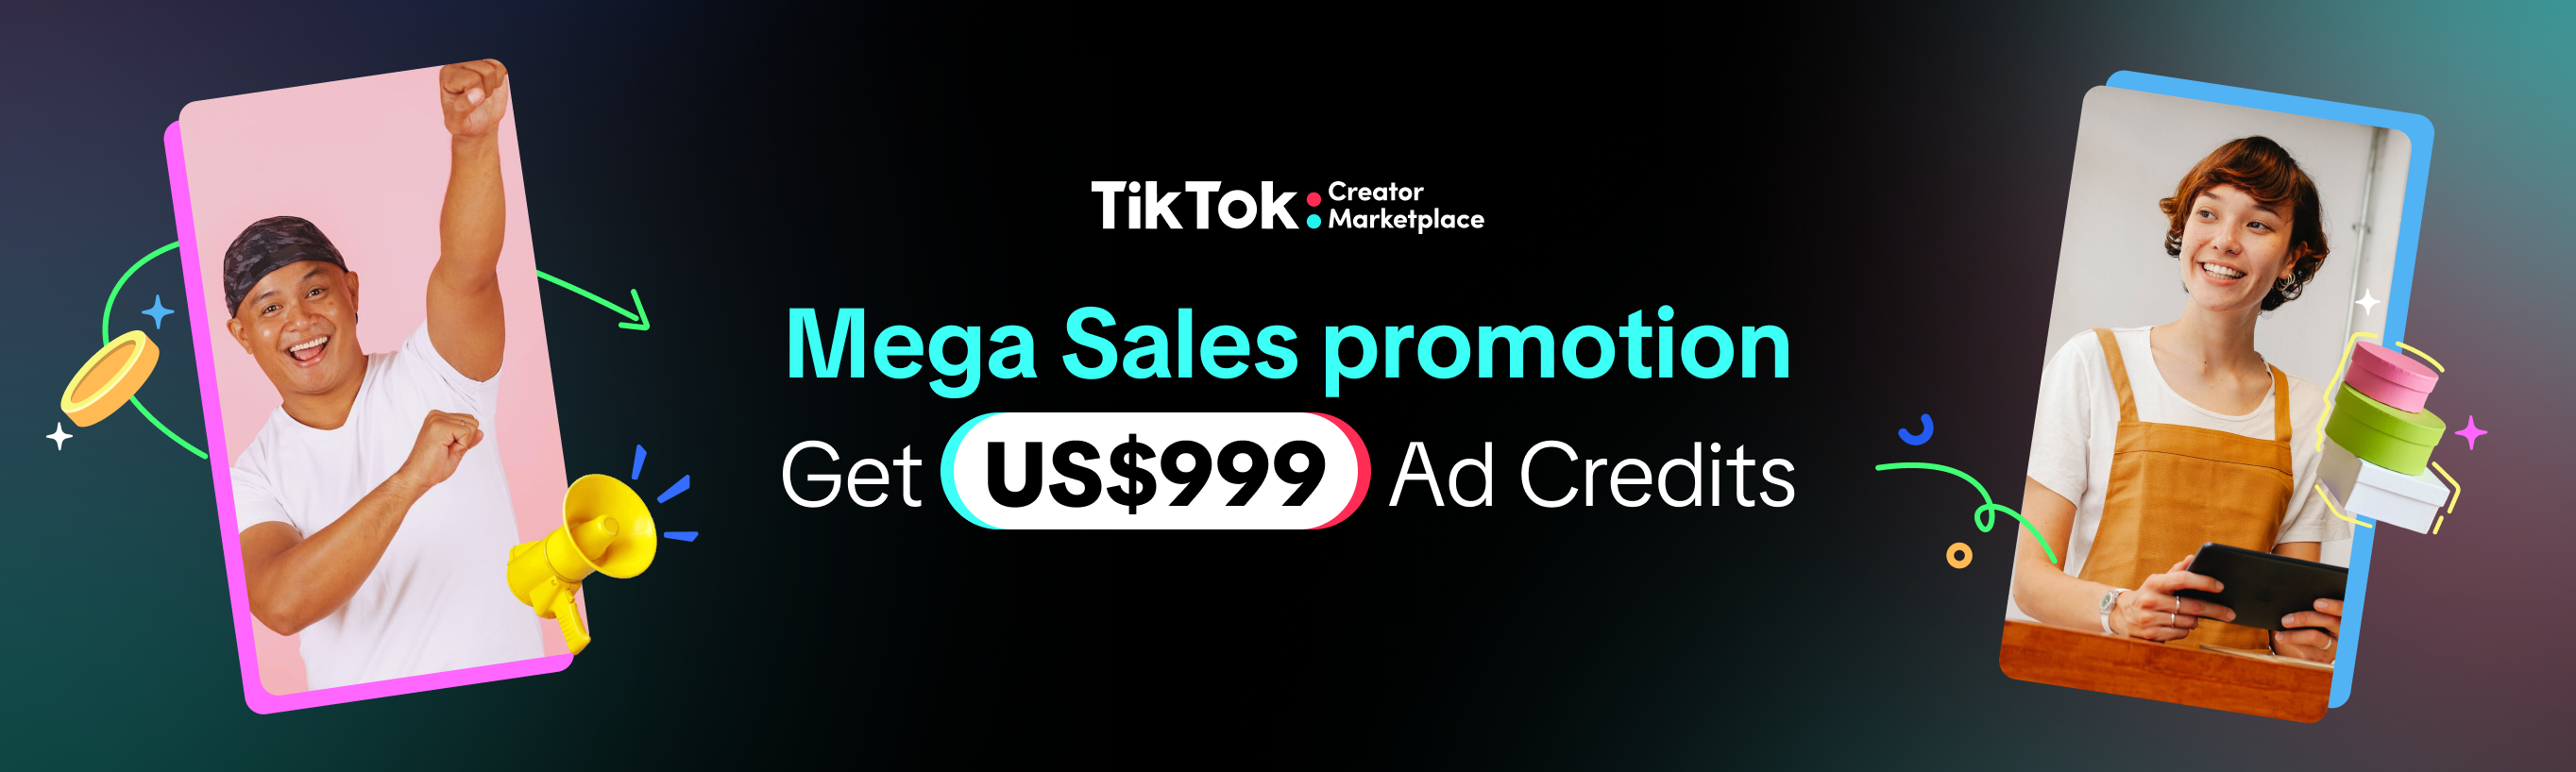 Get US$999 Ad Credits this Mega Sales season